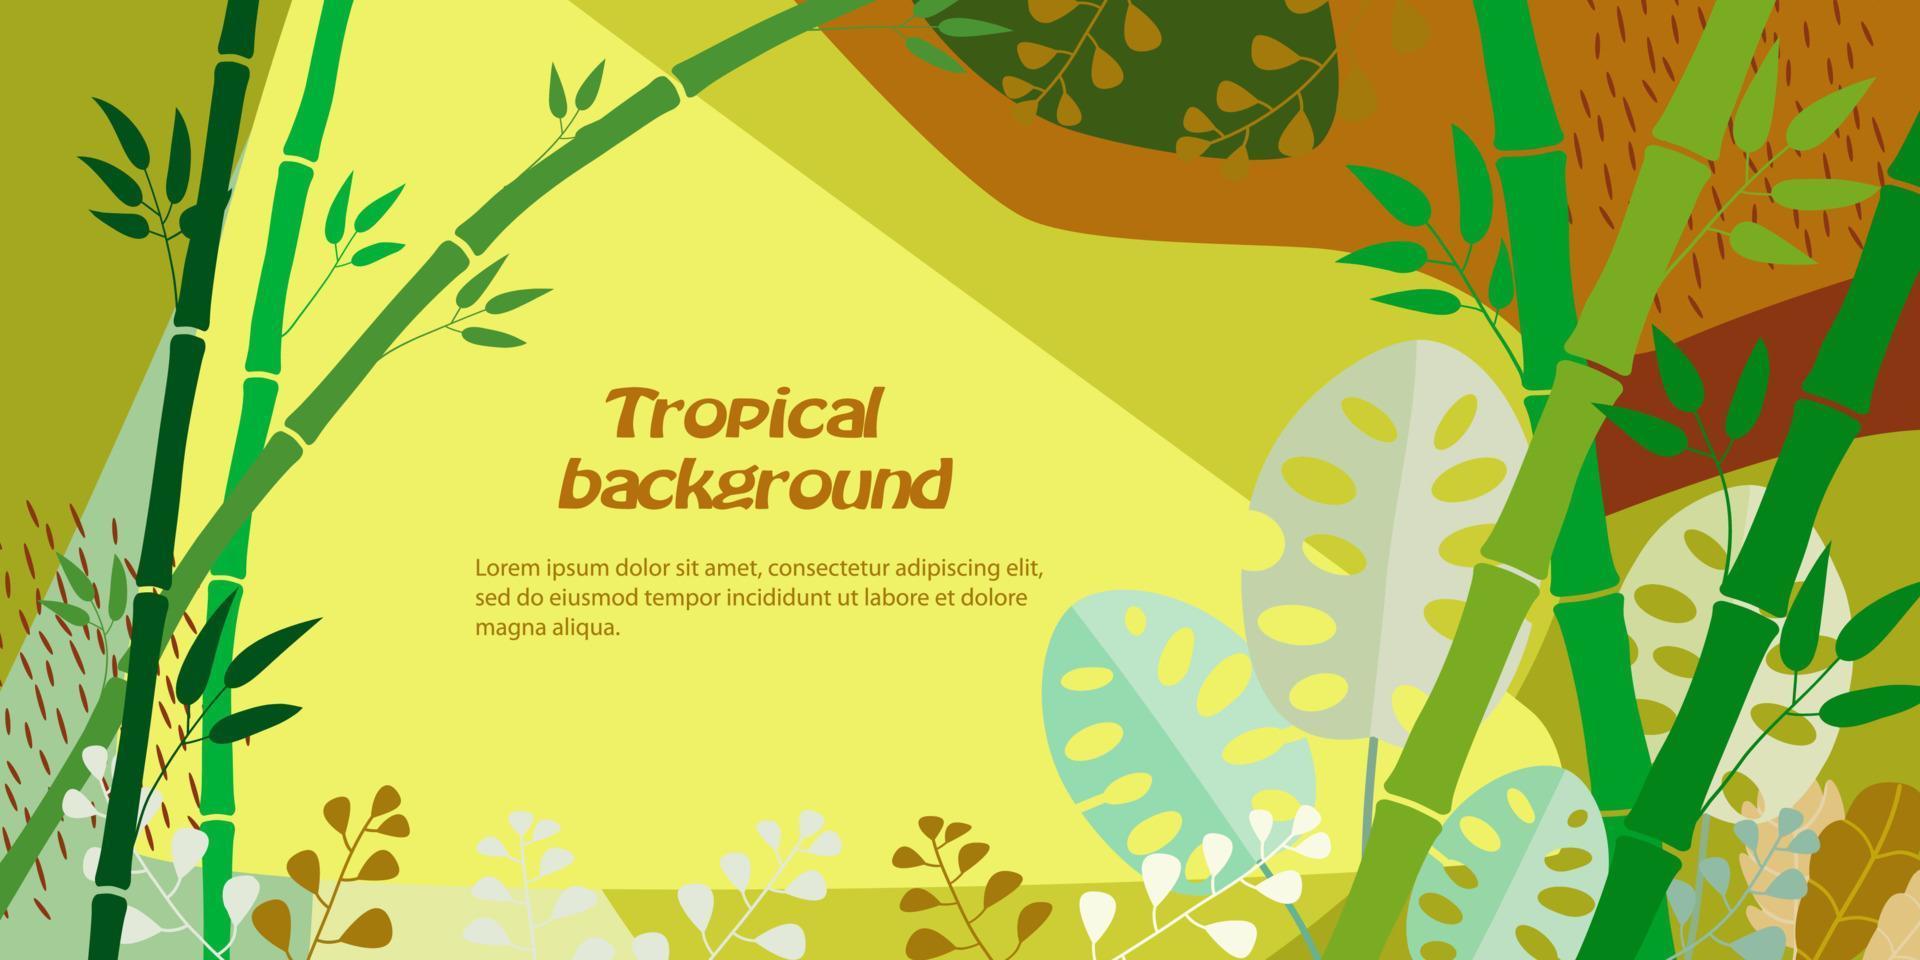 tropisk bakgrund med stjälkar av bambu, monstera, djungel lövverk. vektor illustration i varma gula, bruna färger. mall för omslag, reklam, webbdesign, affisch. plats för text.